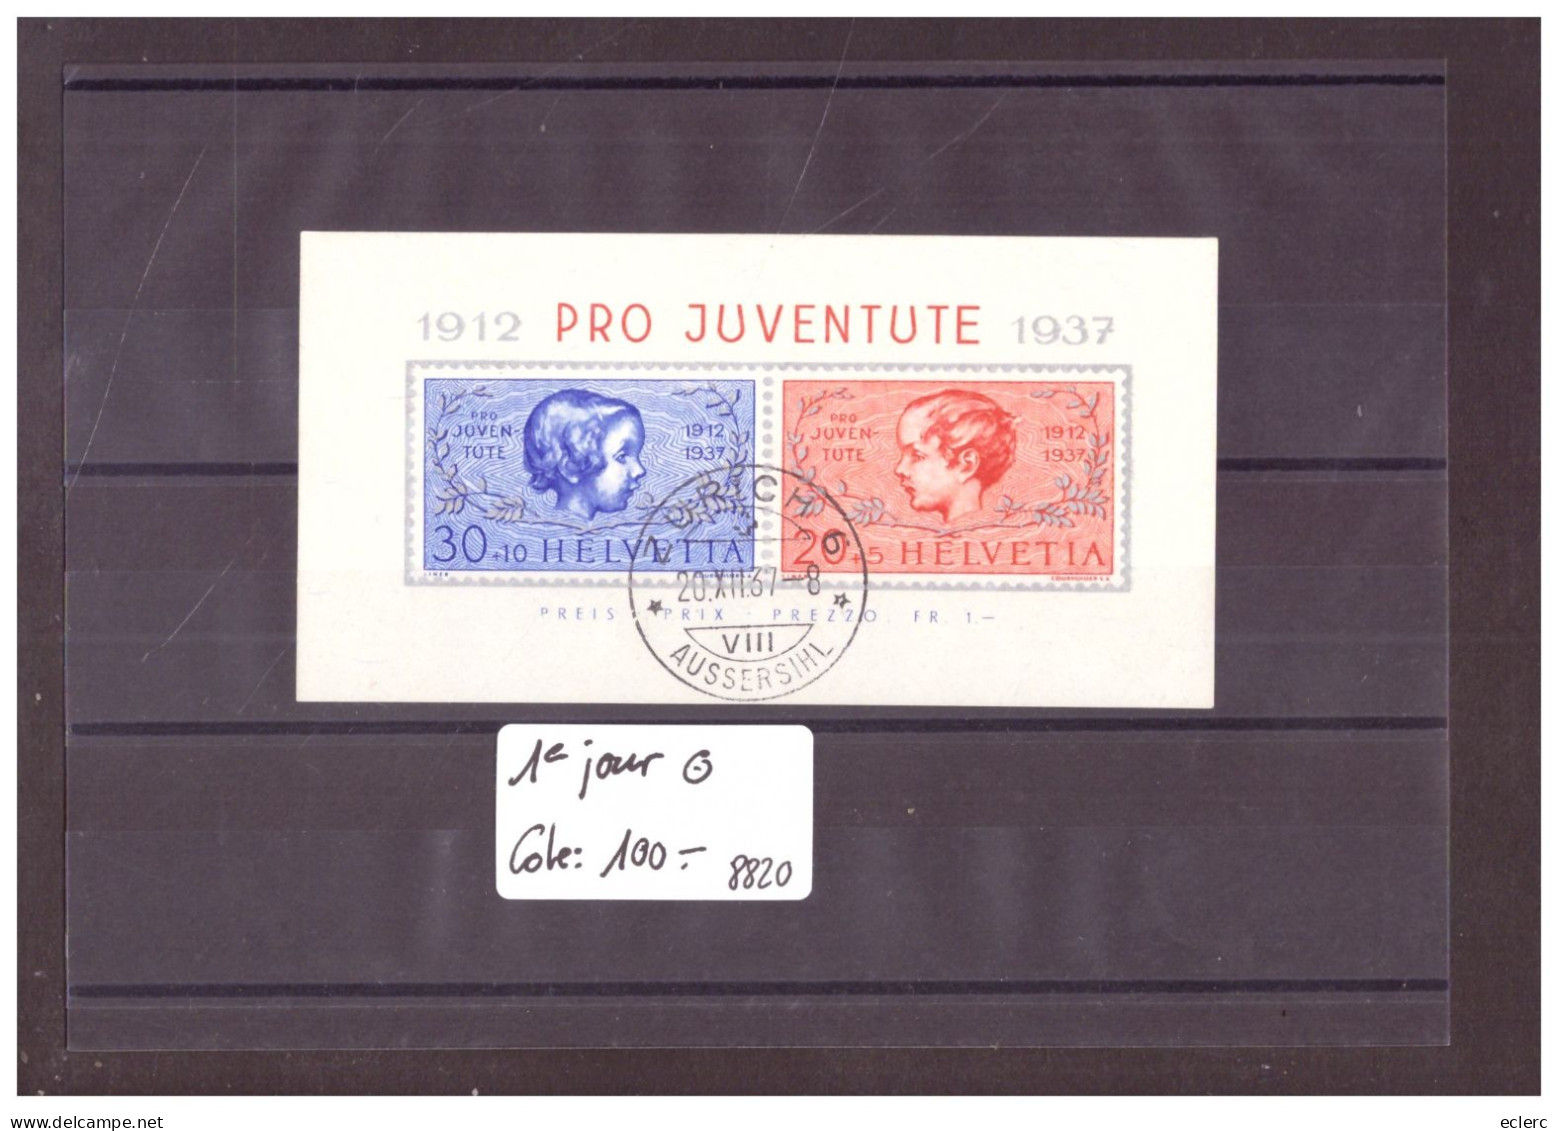 BLOC PRO JUVENTUTE 1937 OBLITERE PREMIER JOUR  - COTE: 100.- - Blocks & Sheetlets & Panes